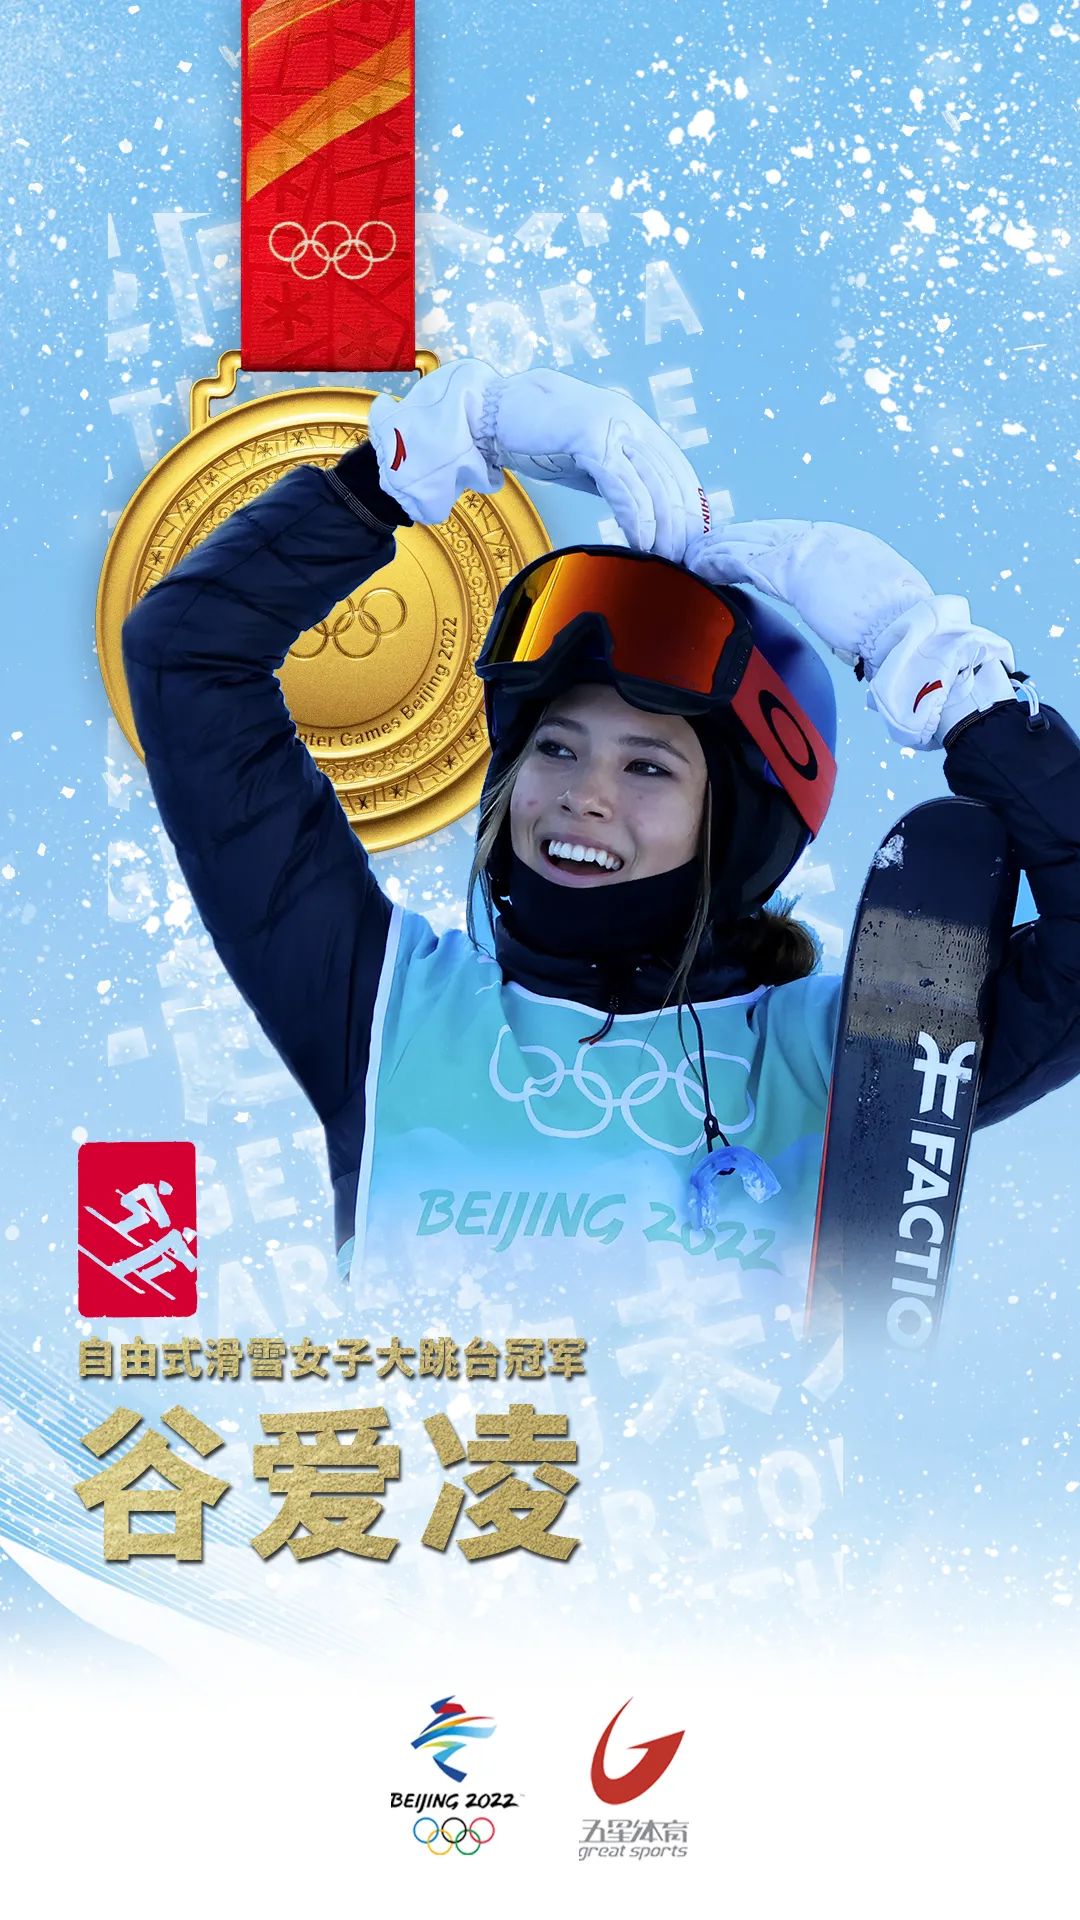 就在2月8日上午结束的自由式滑雪女子大跳台决赛上,中国选手谷爱凌在